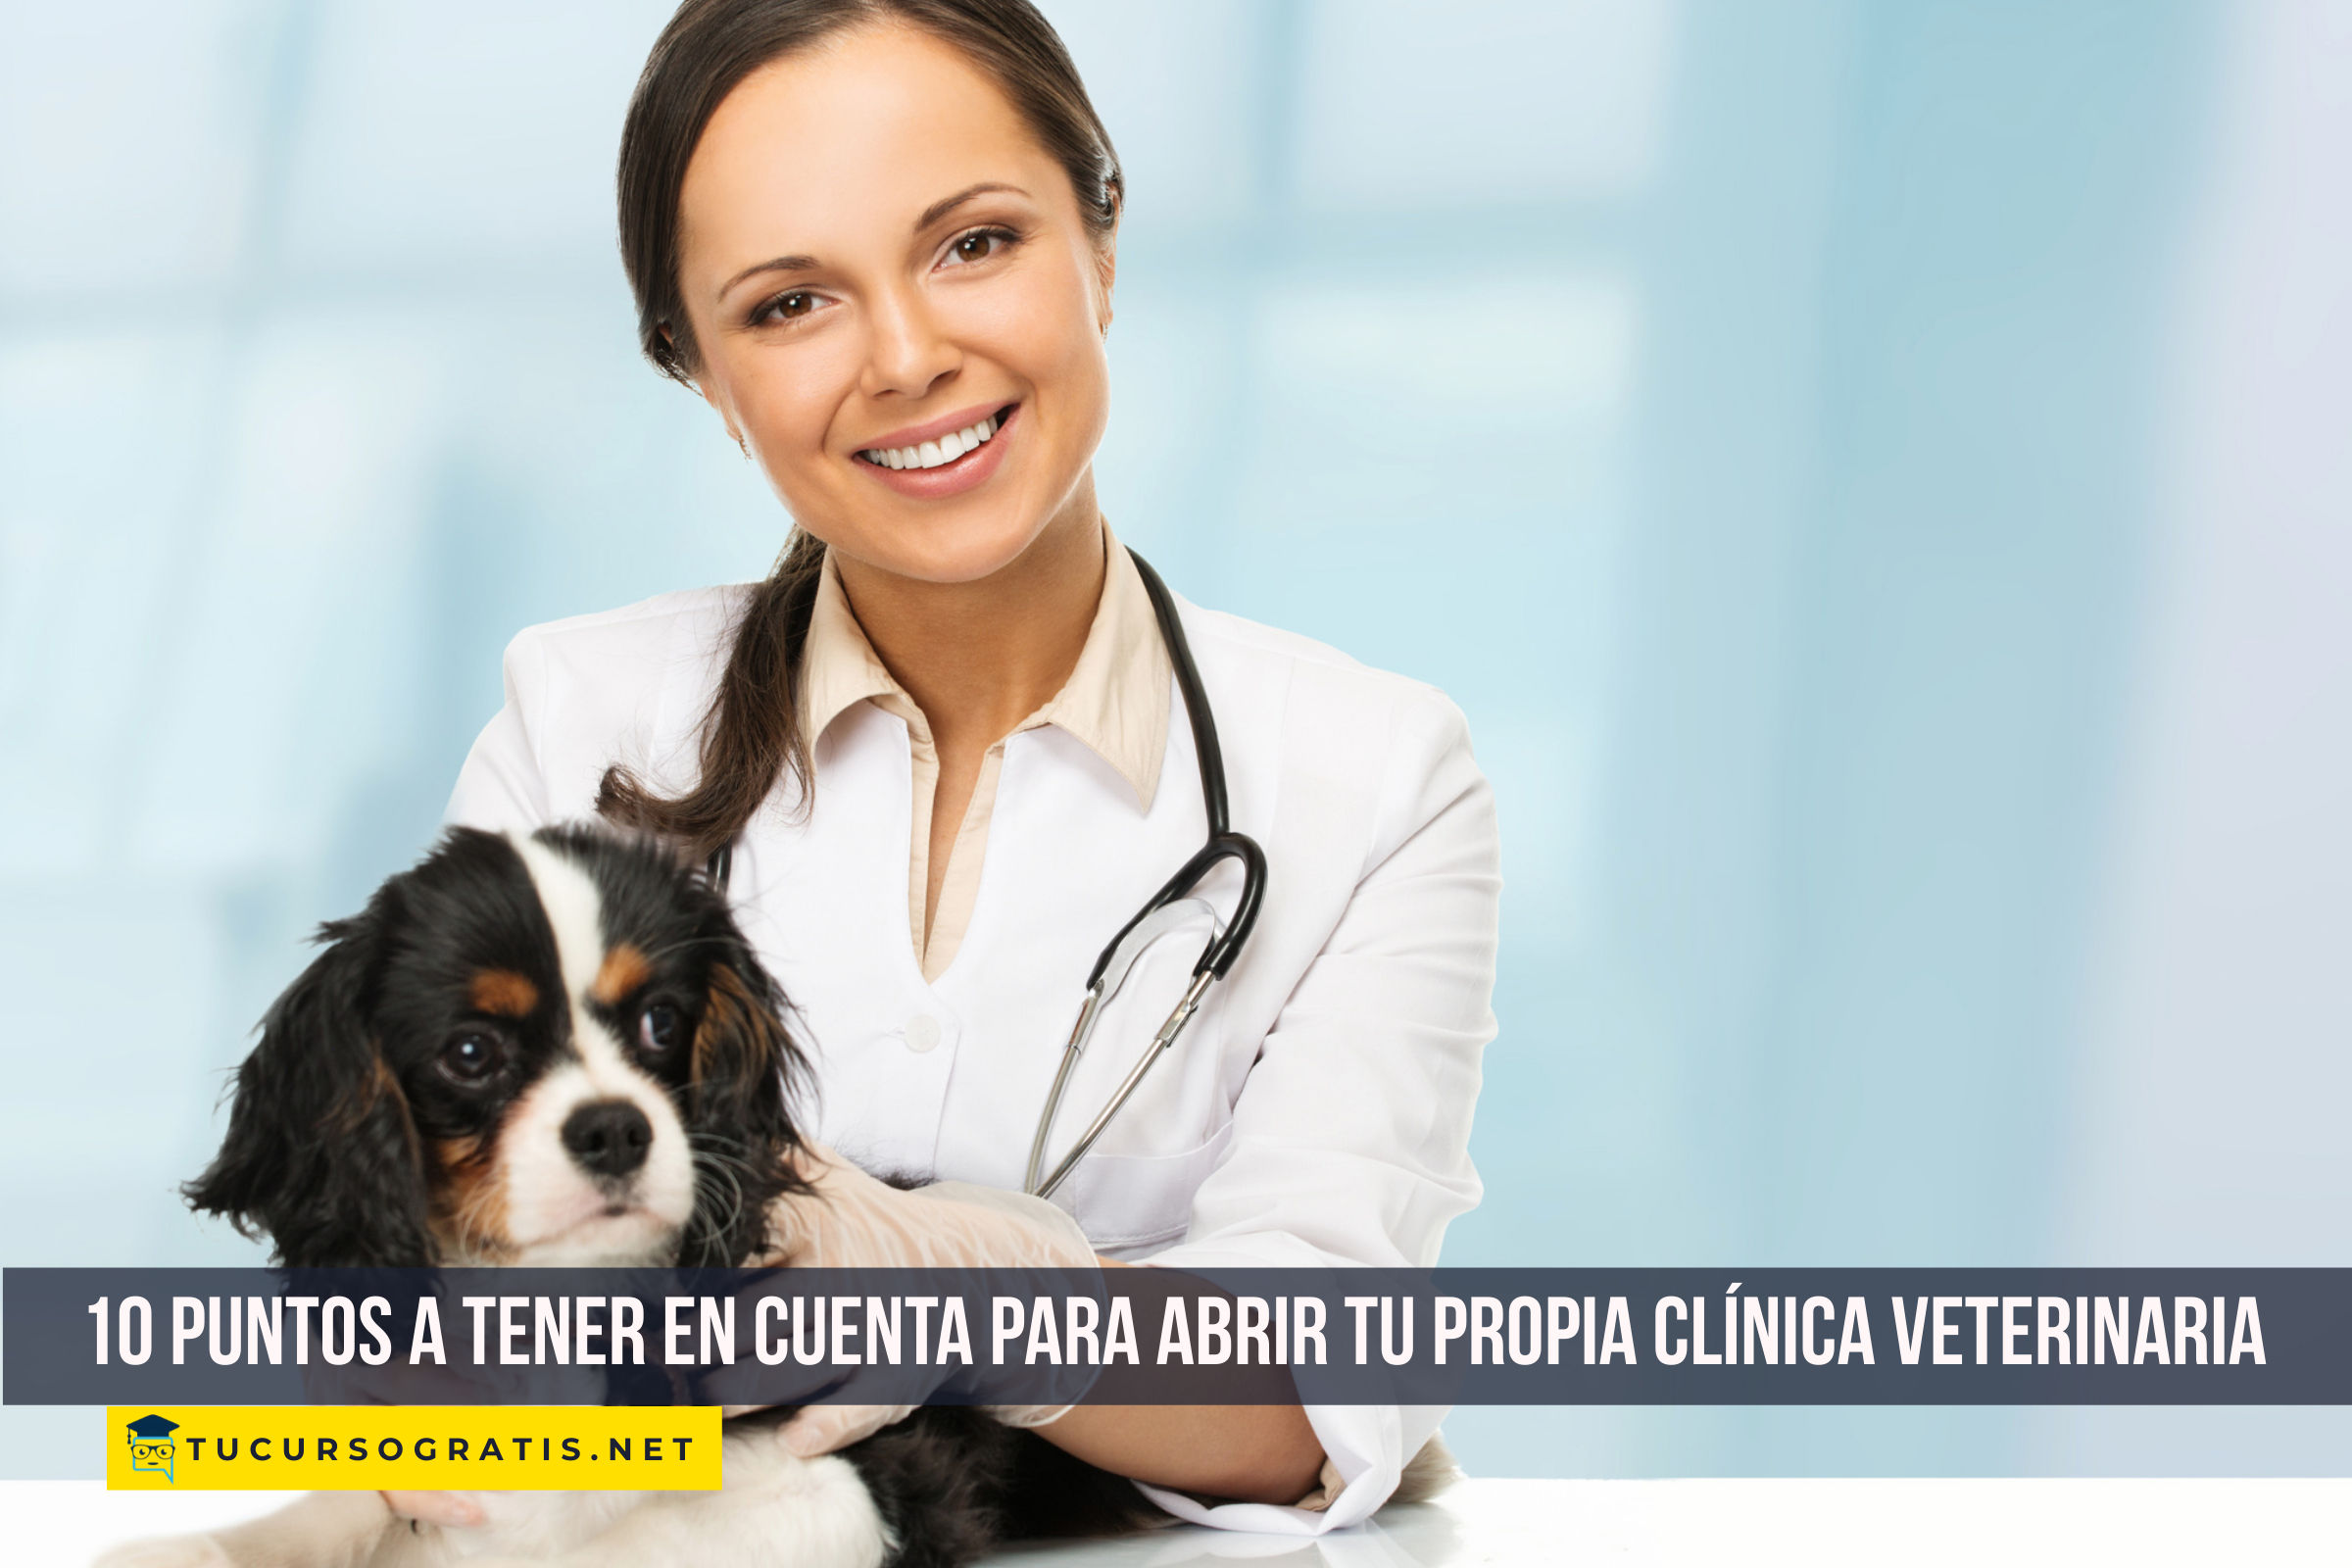 10 Puntos a tener en cuenta para abrir tu propia clínica veterinaria